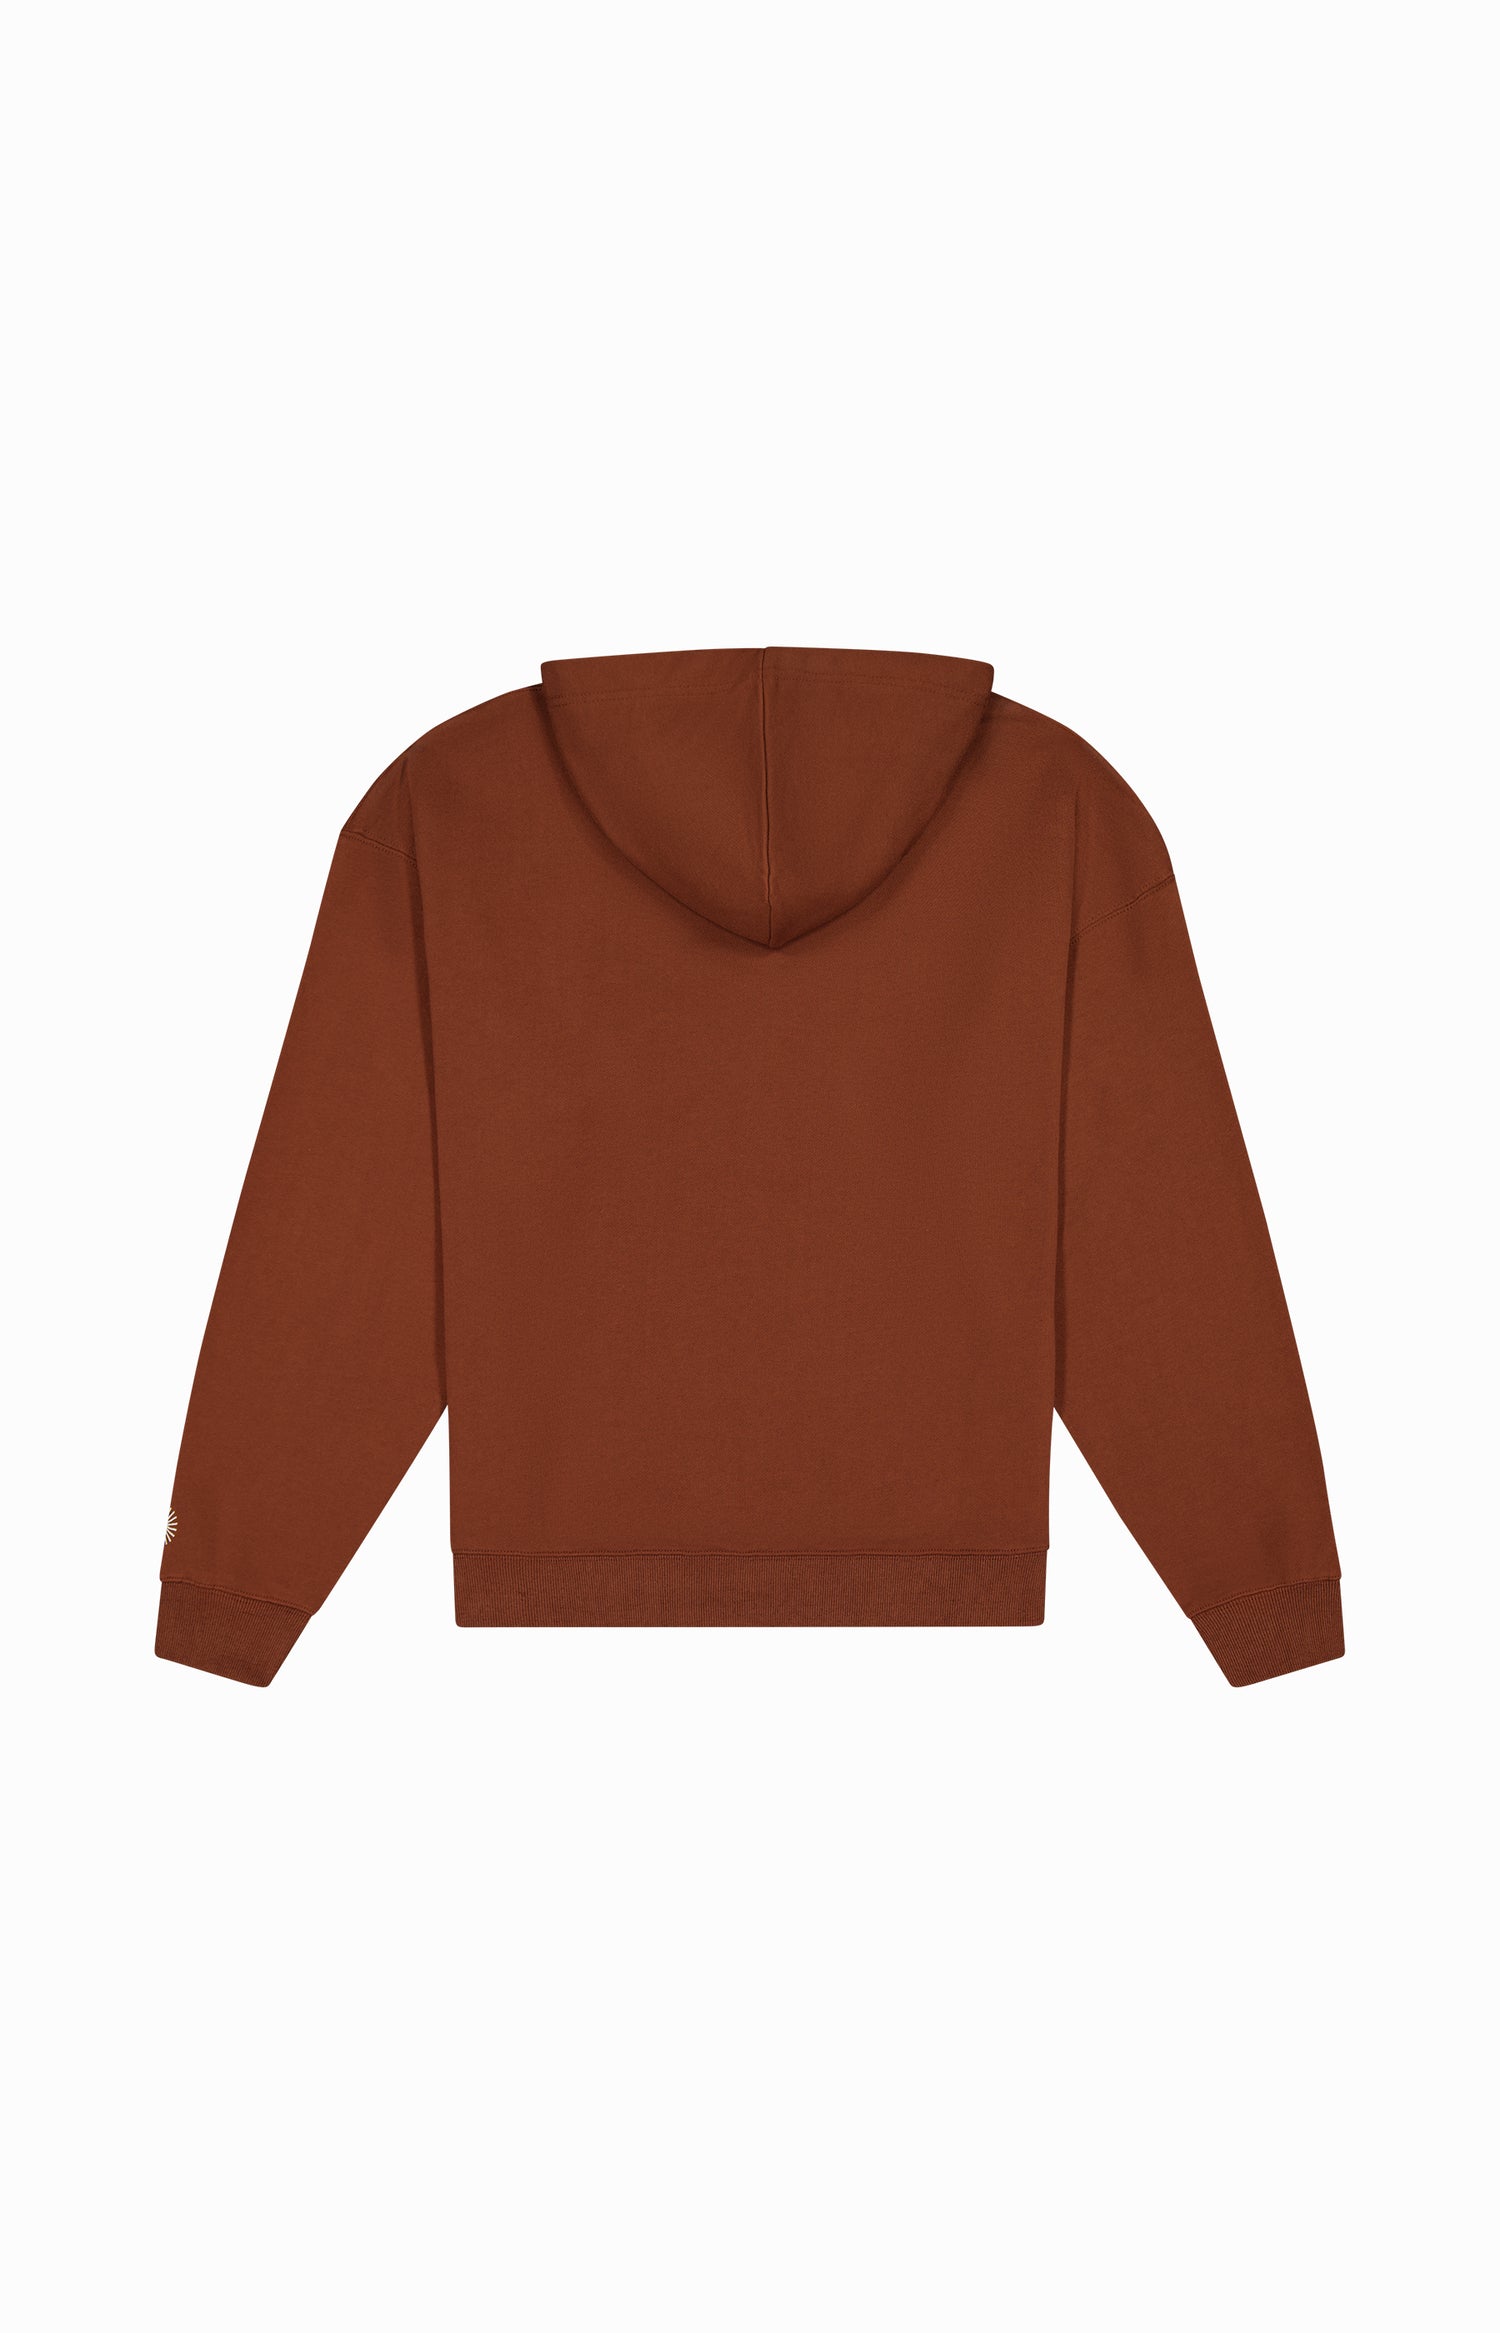 back of plain brown hoodie